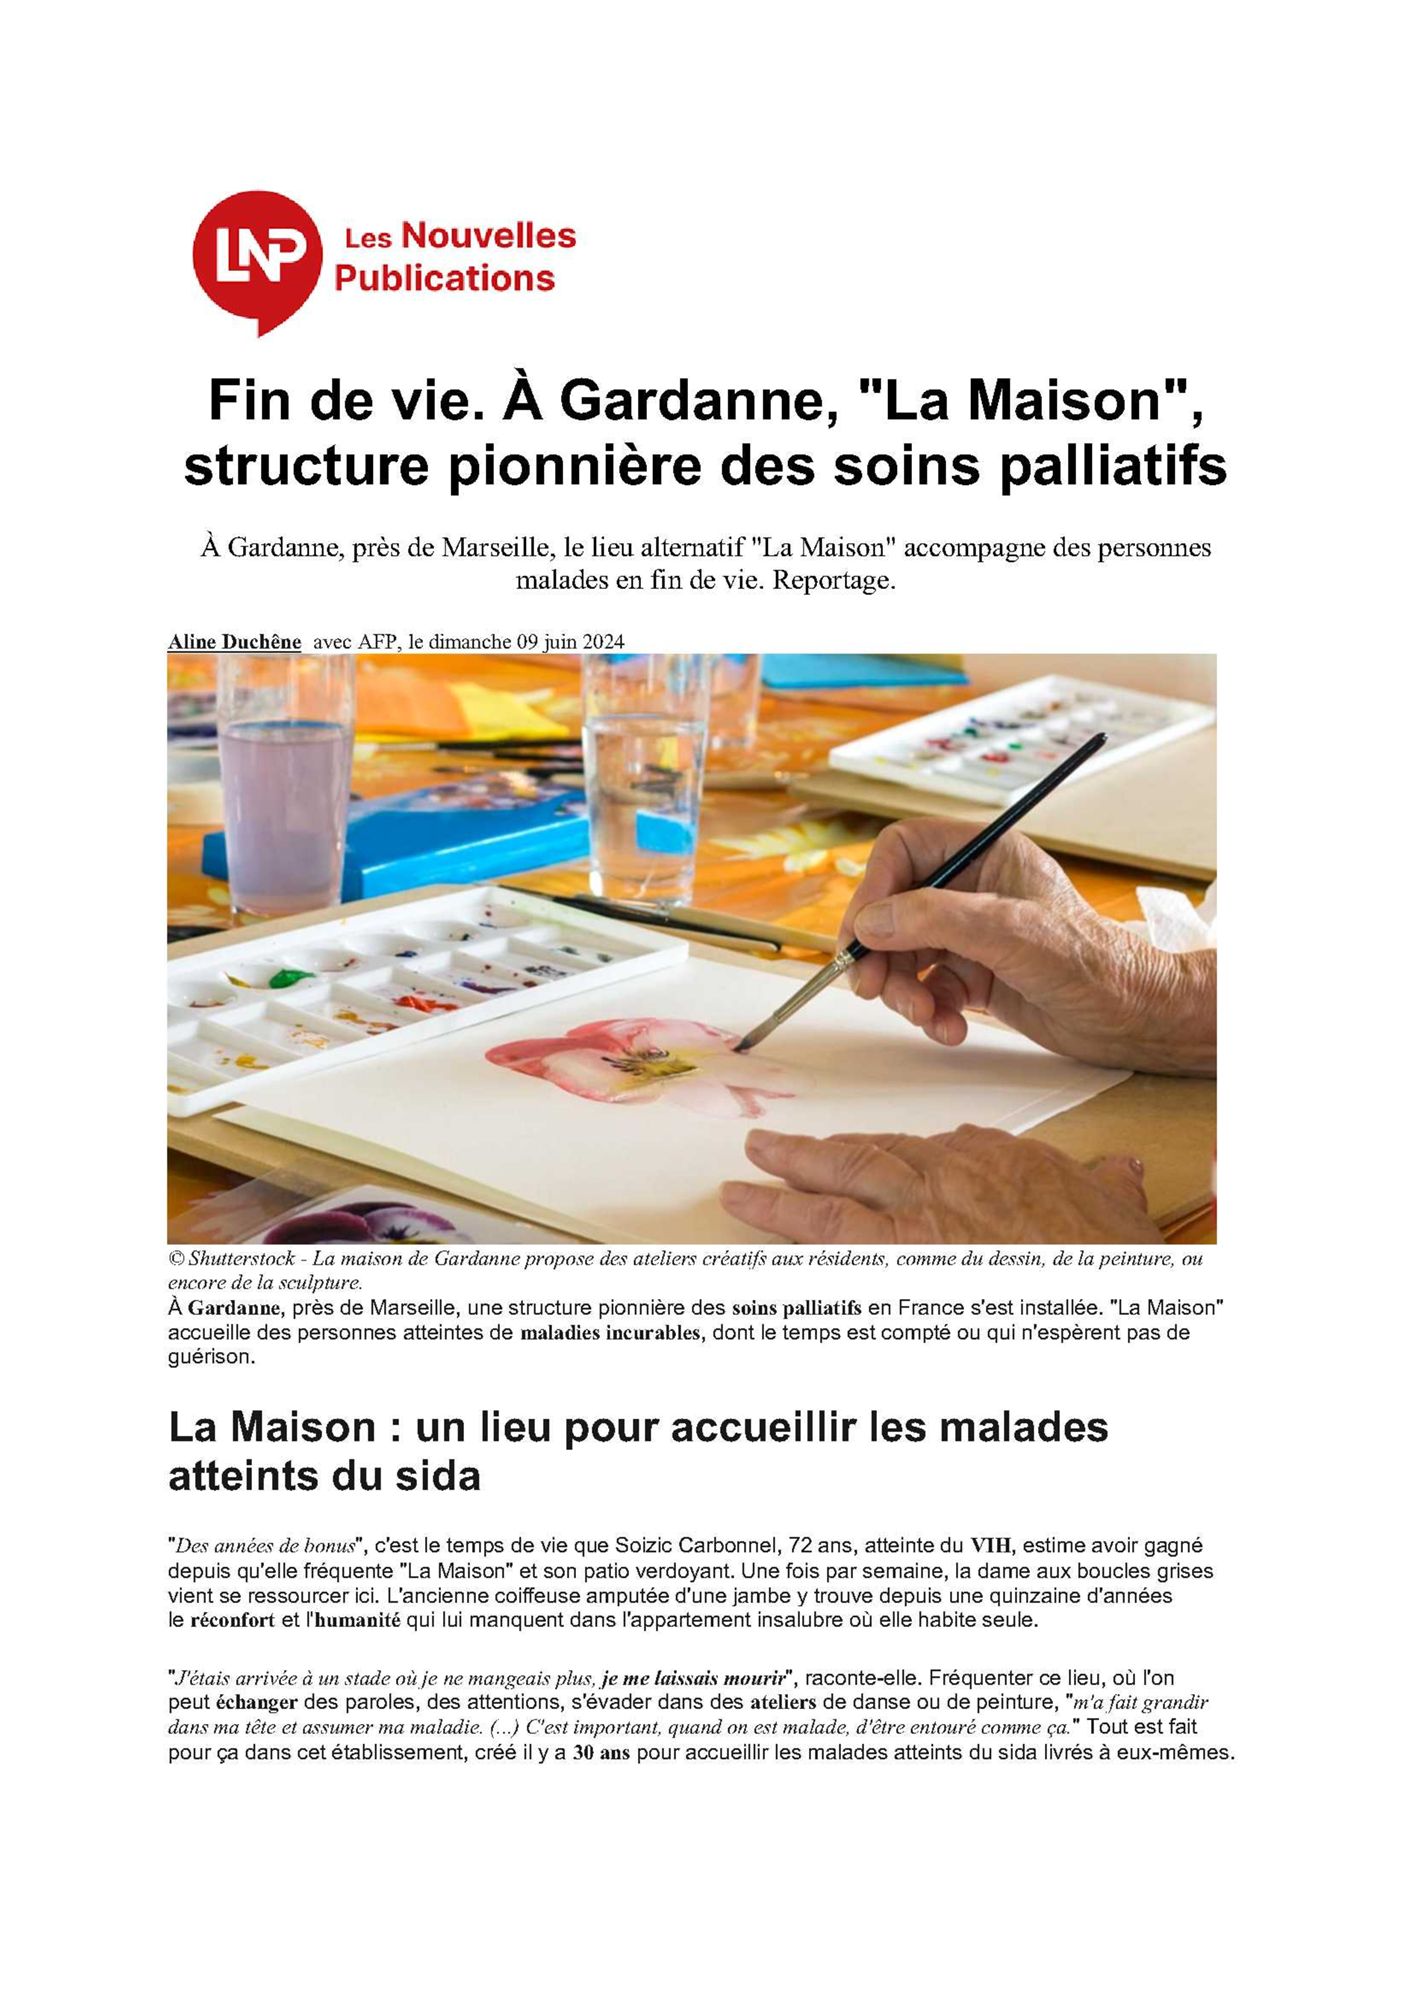 Les Nouvelles Publications : Fin de vie. À Gardanne, "La Maison", structure pionnière des soins palliatifs